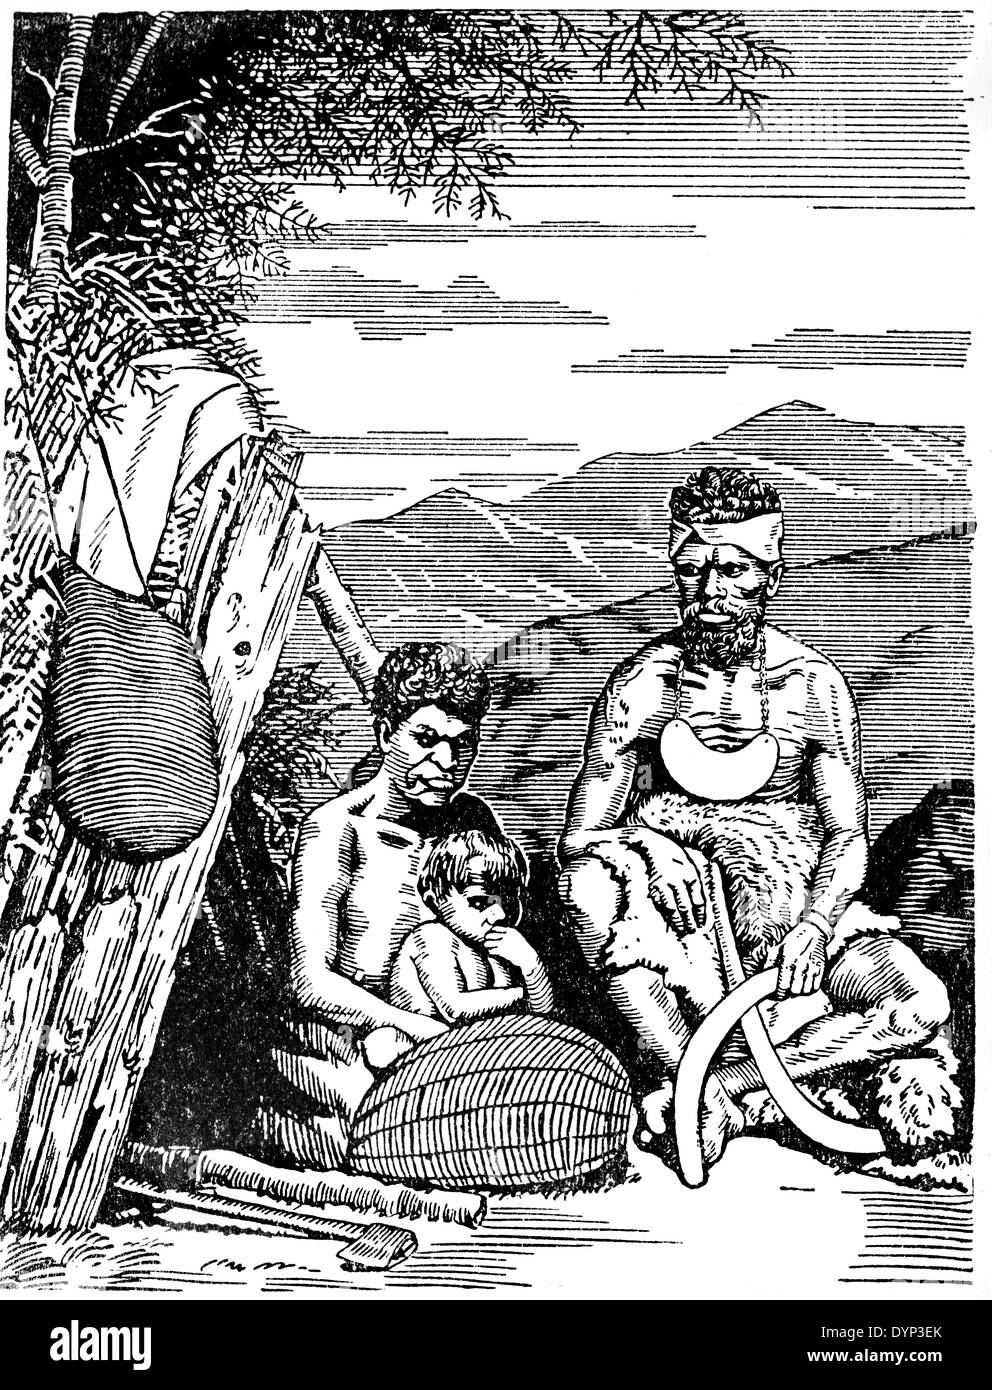 Indigene Australier Familie, Illustration aus sowjetischen Enzyklopädie, 1926 Stockfoto